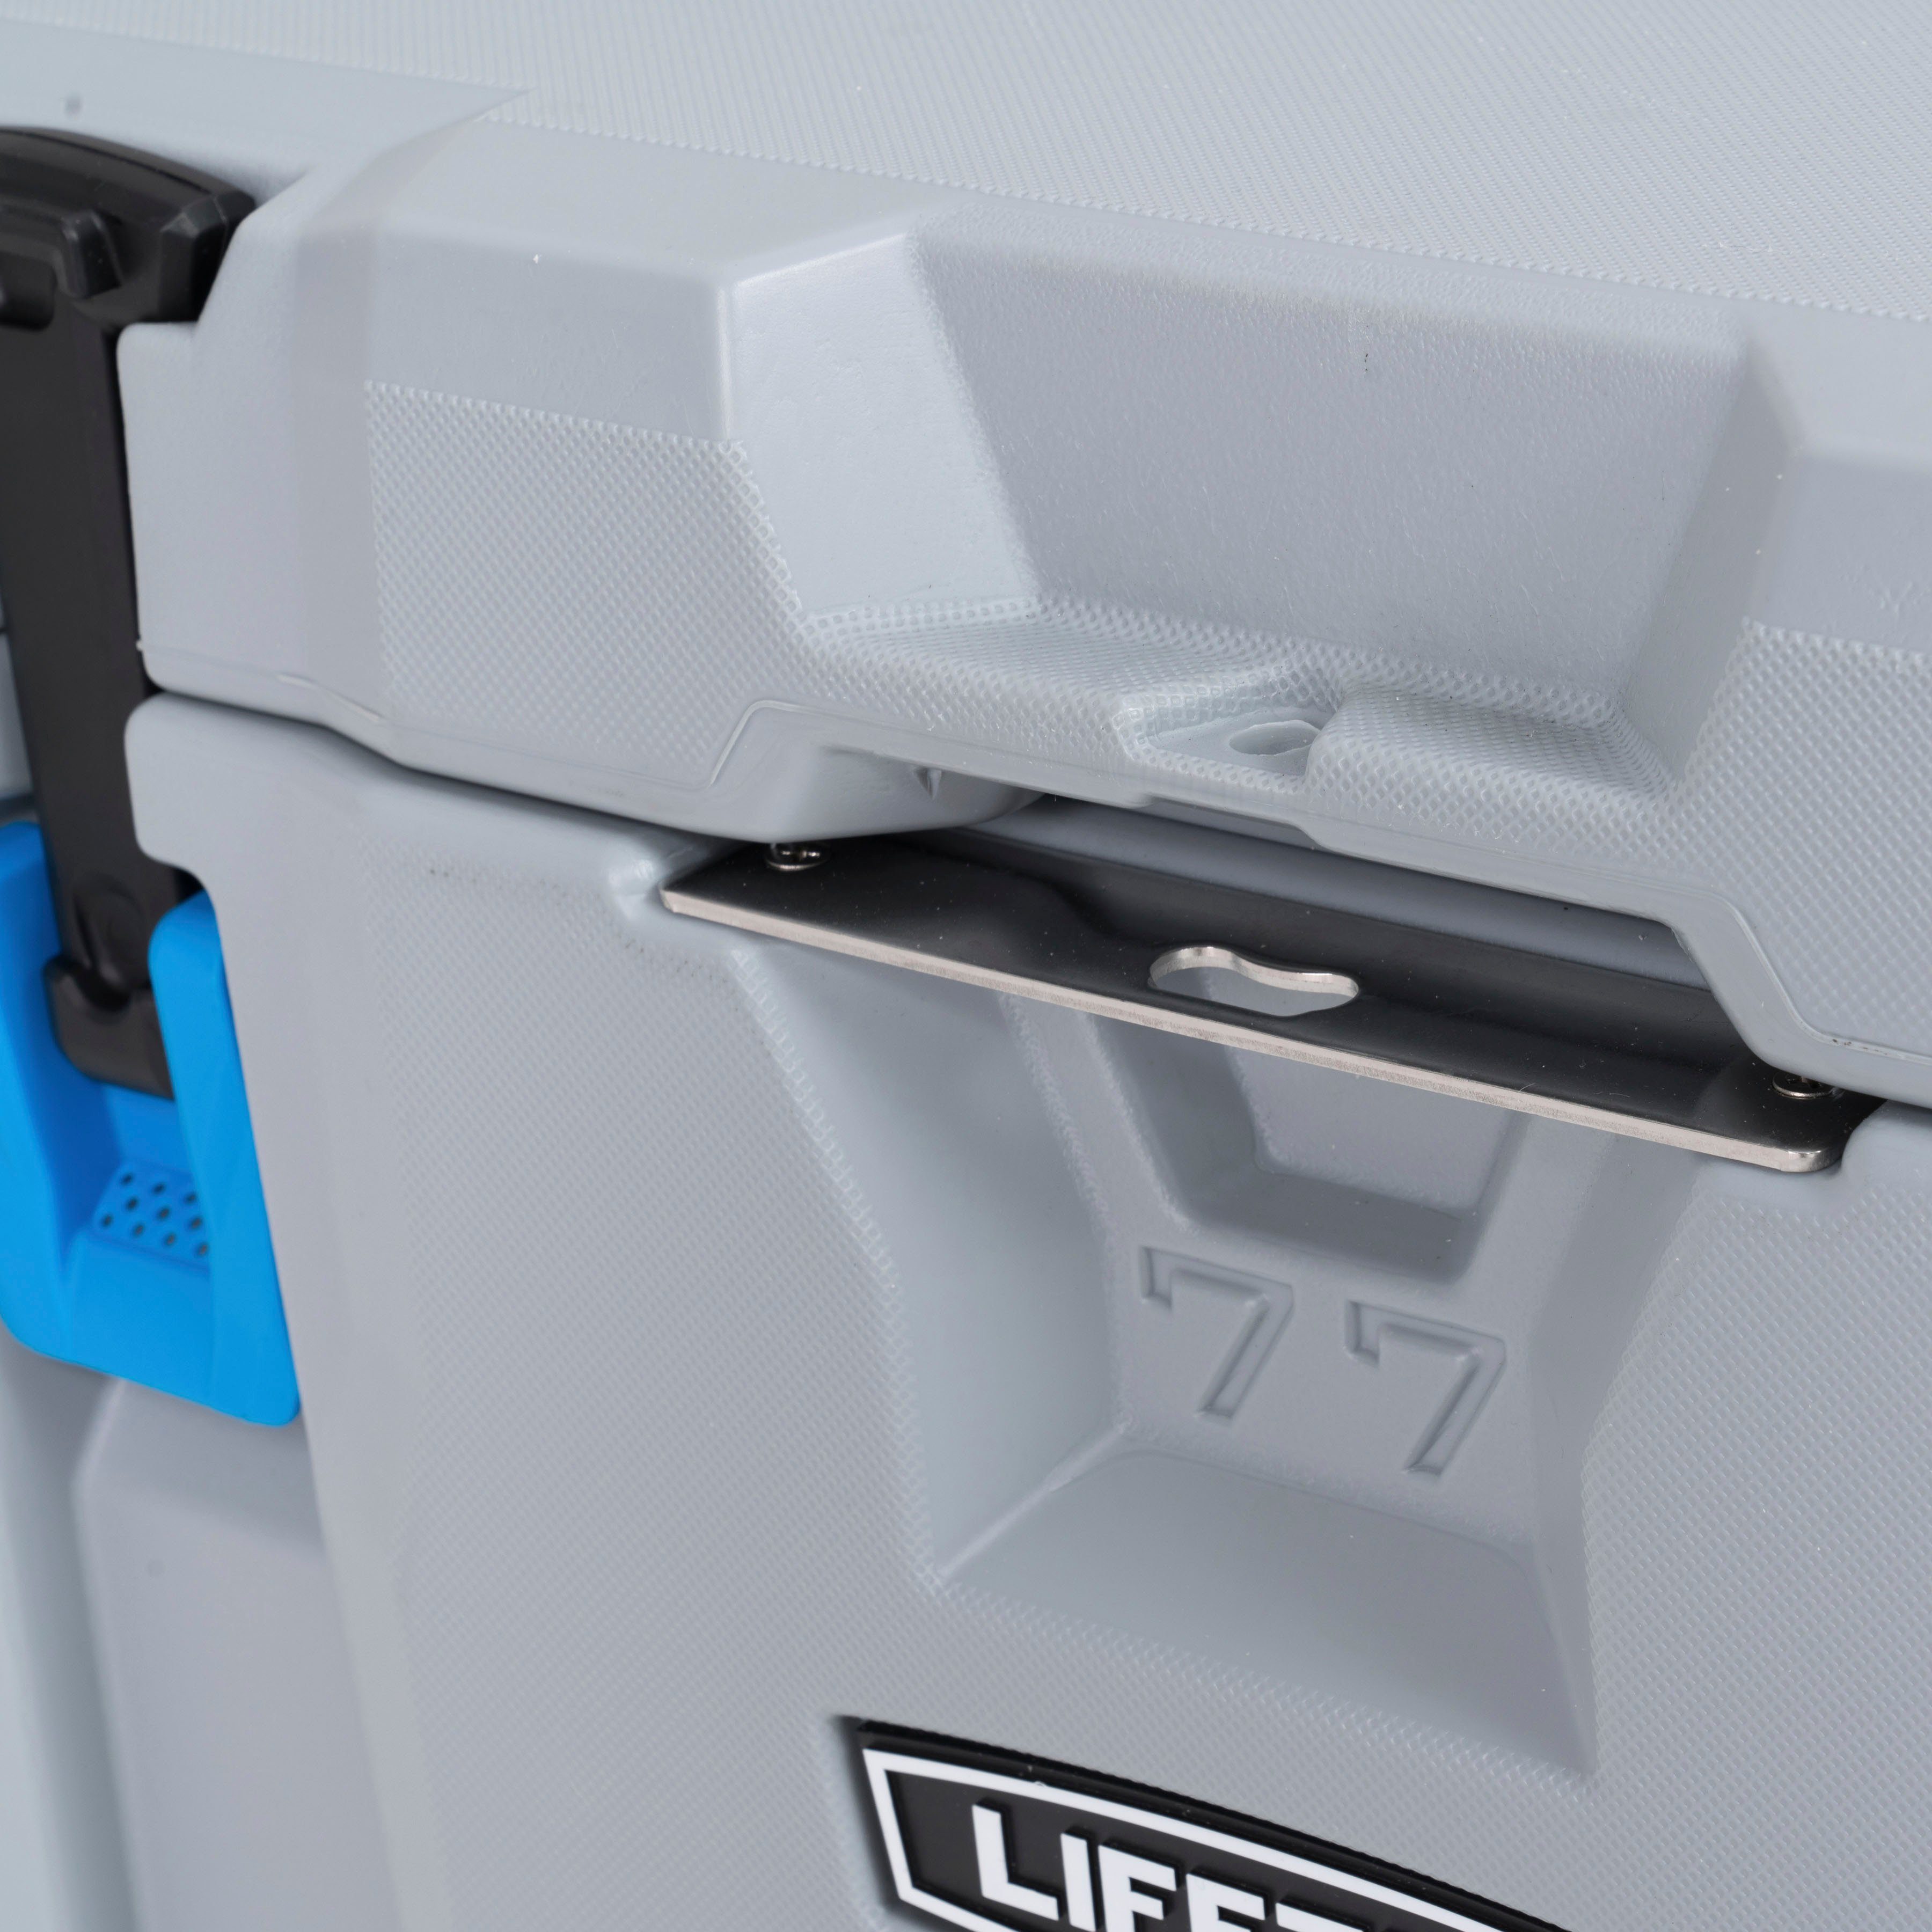 Kühlbox Urethan aus Lifetime 73 l, zweischichtigem Premium,